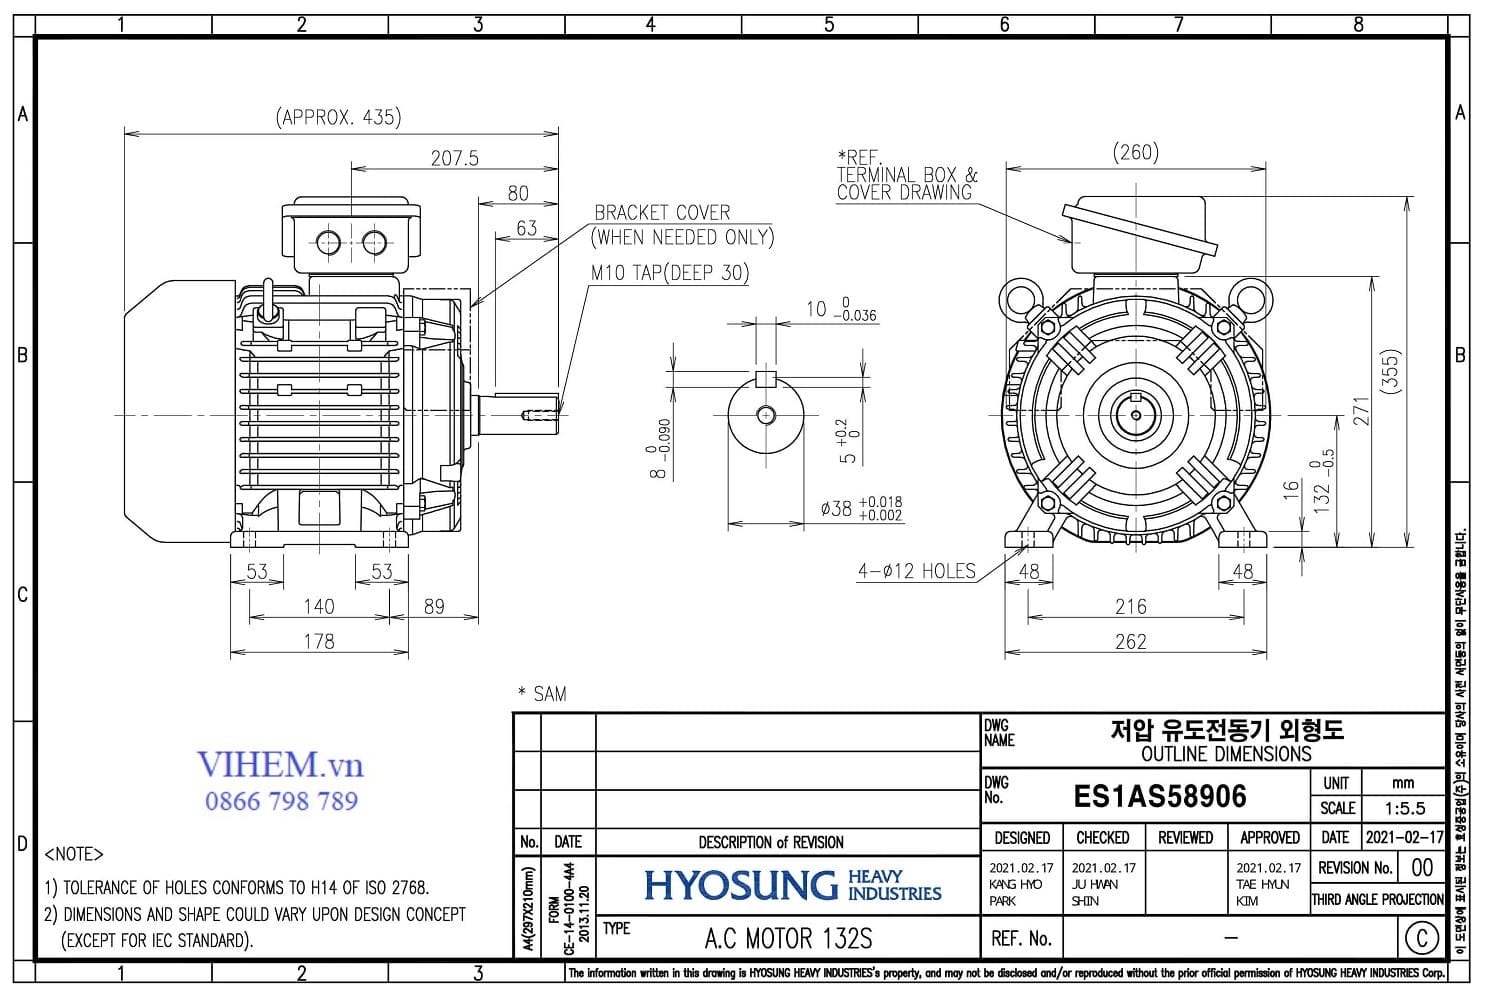 Bản vẽ ký thuật kích thước lắp đặt động cơ điện 3 pha HYOSUNG 7,5kW - 2P (3000 r/min)